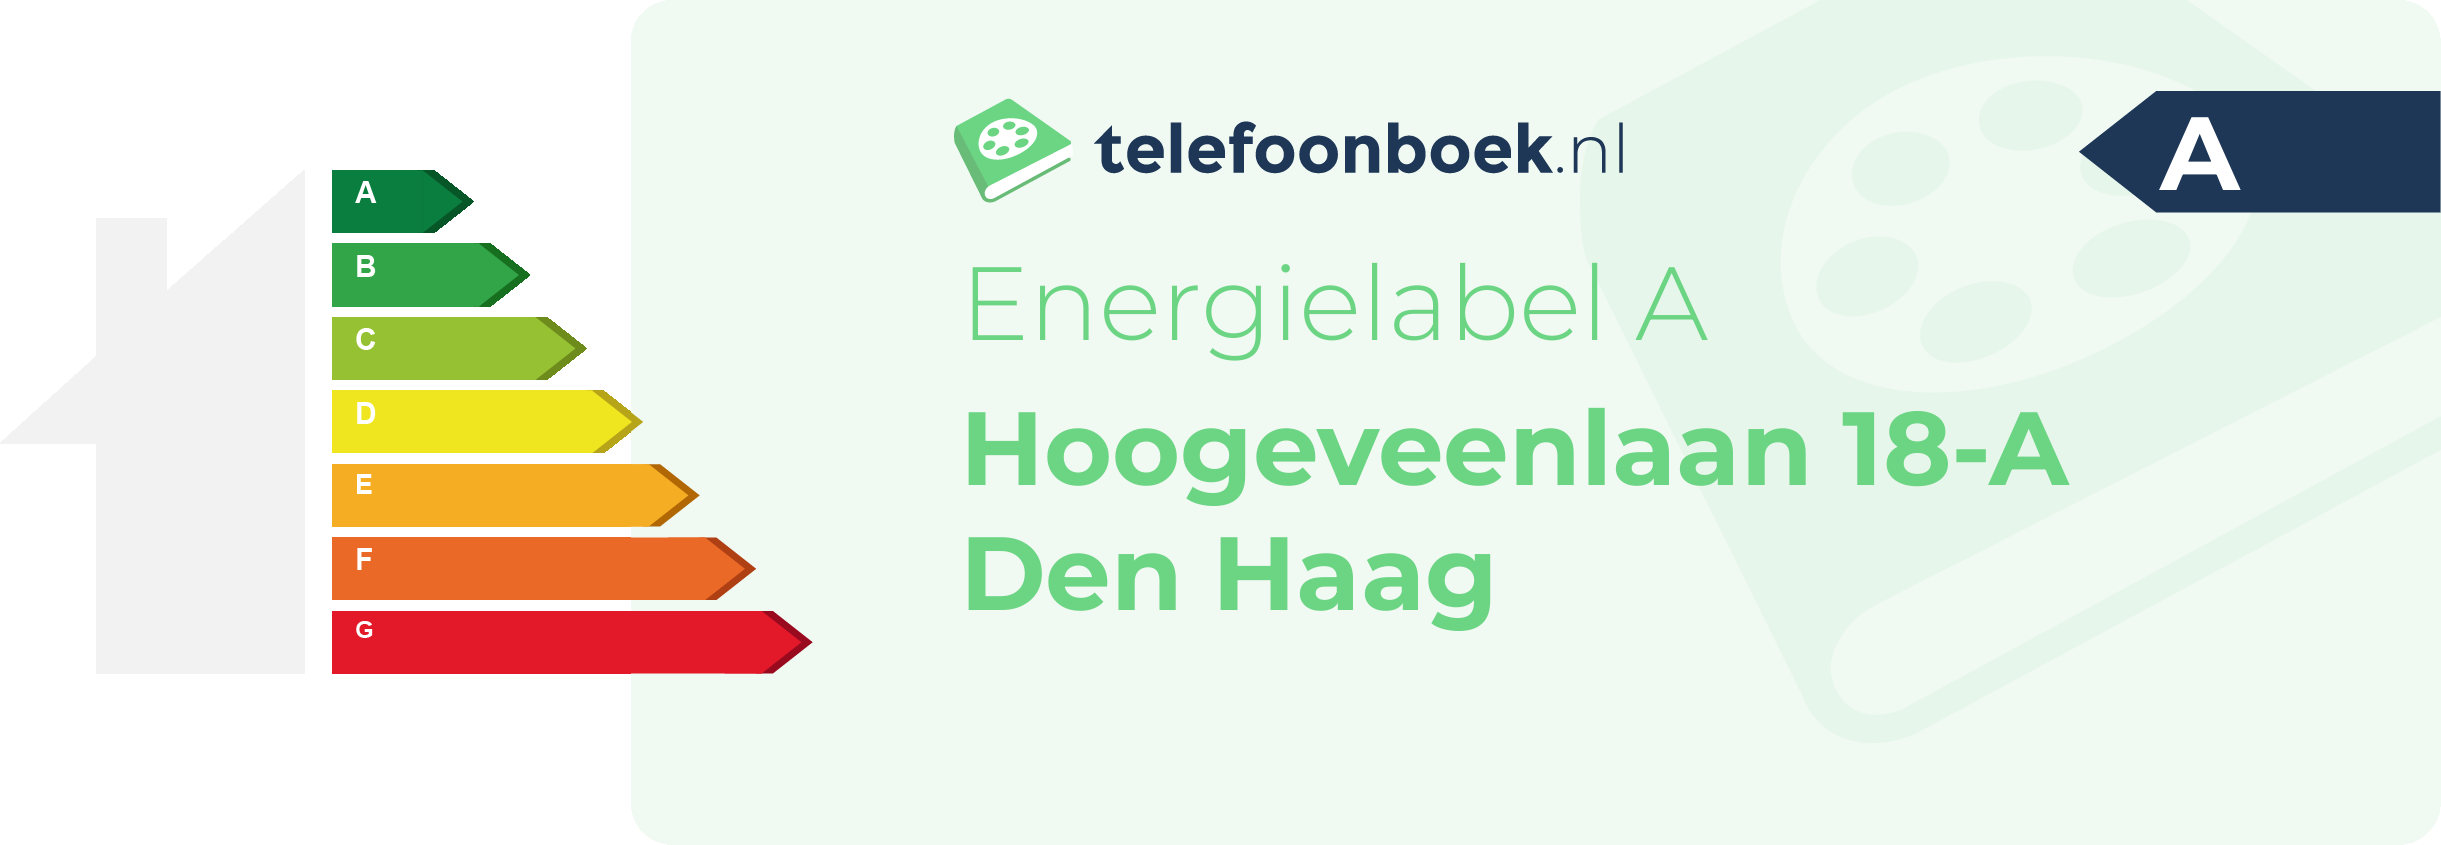 Energielabel Hoogeveenlaan 18-A Den Haag